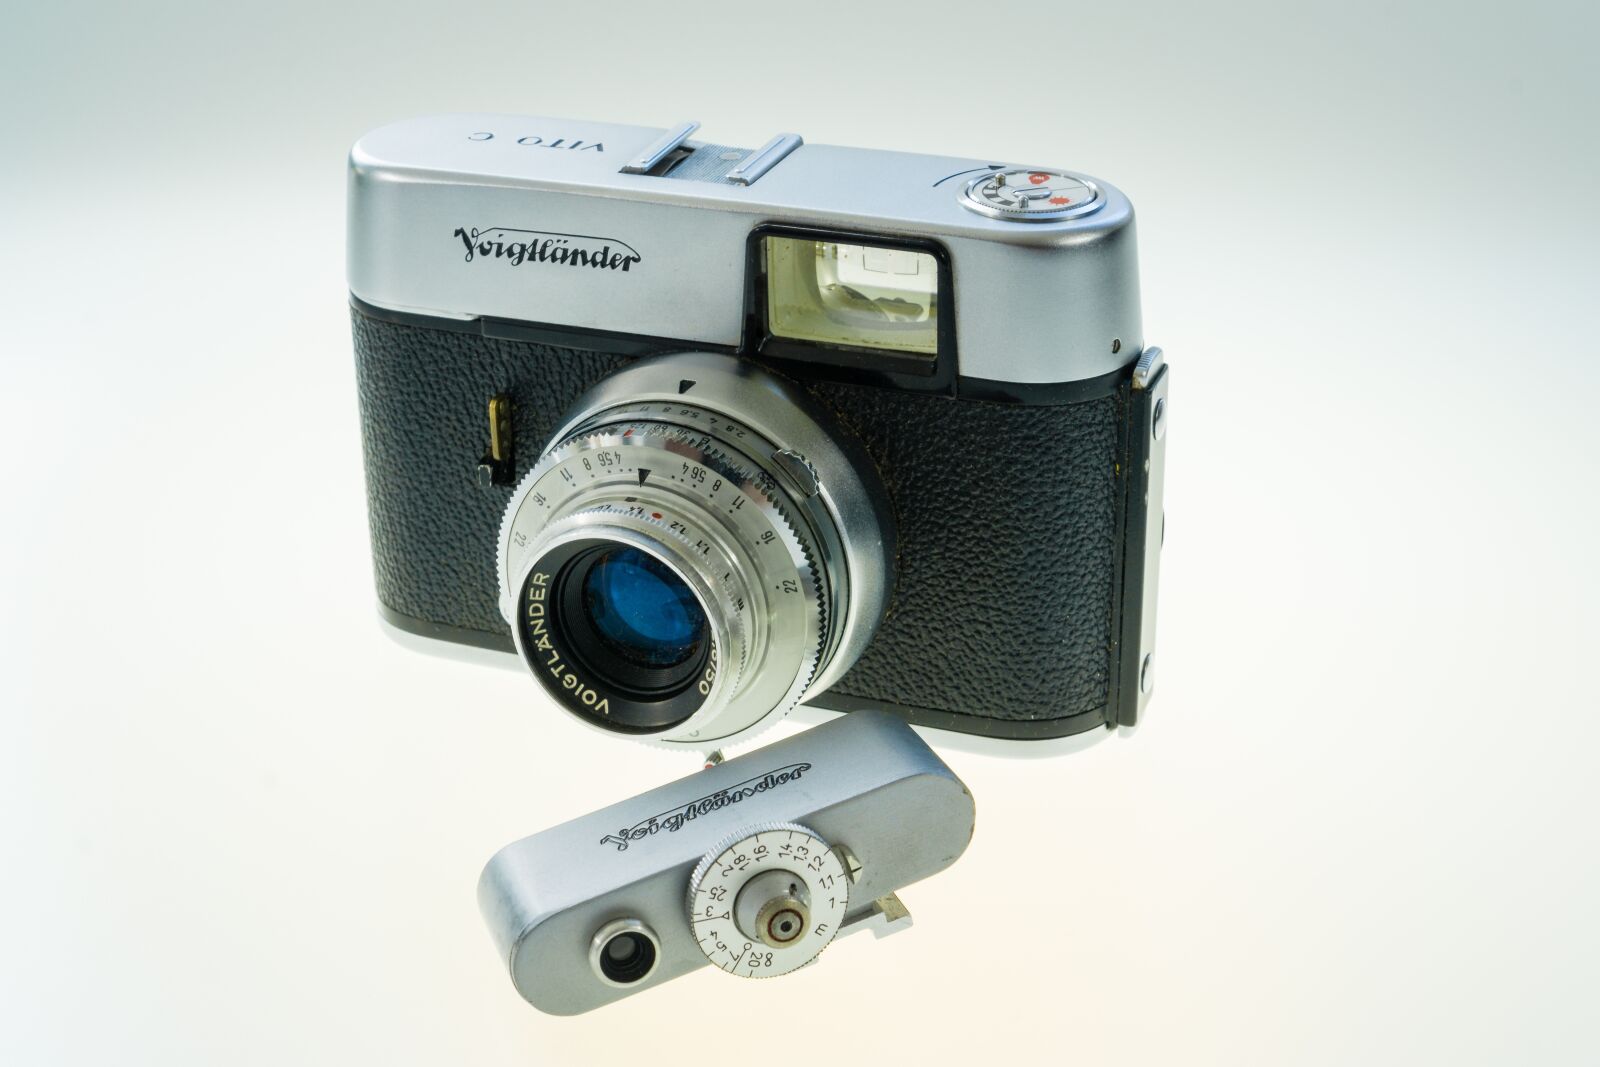 Sony a6000 sample photo. Voigtlander, vito c, camera photography